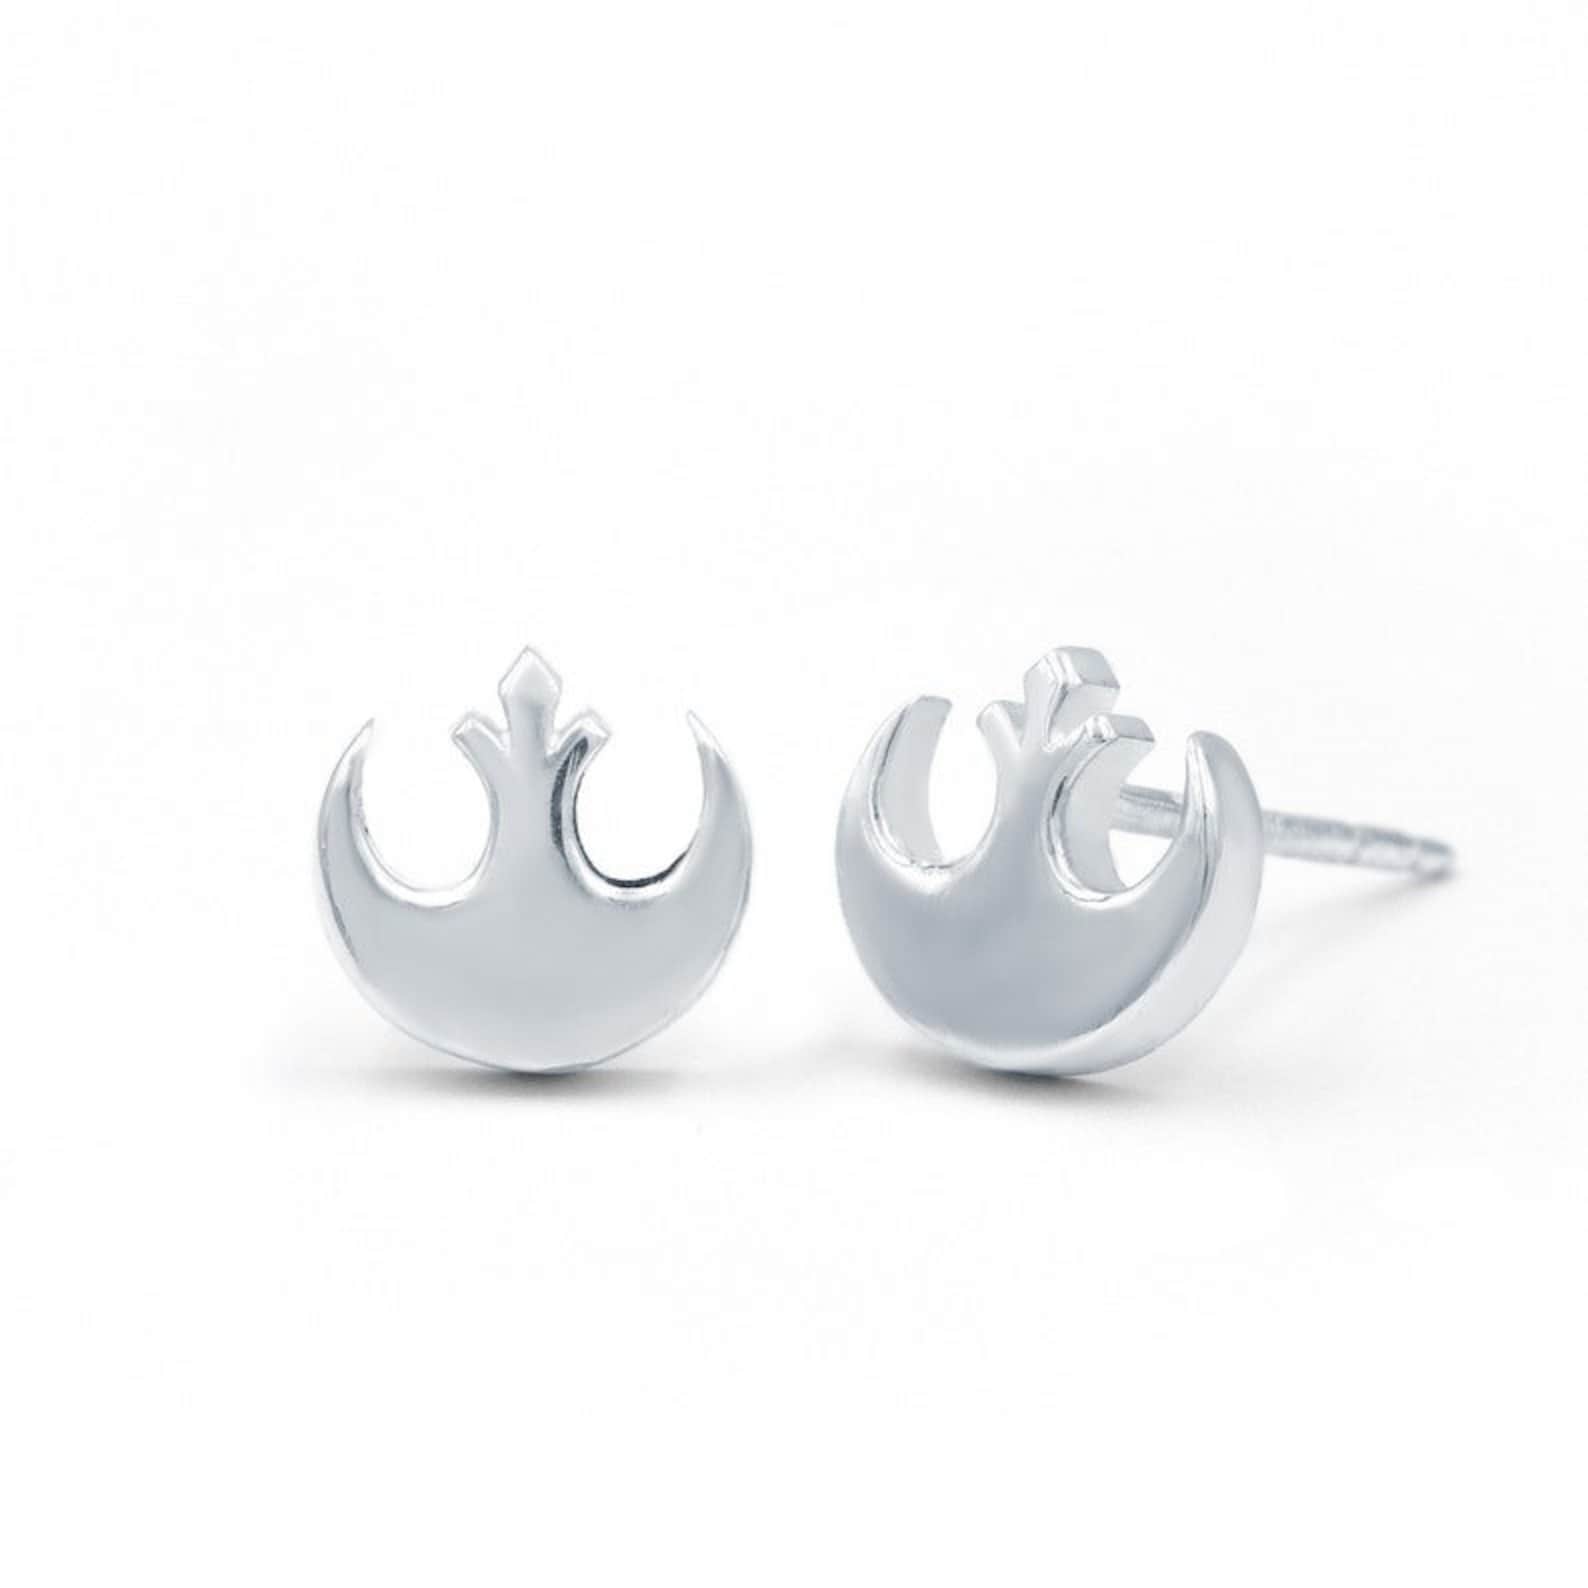 SW Rebel Alliance Silver Stud Earrings Set 2